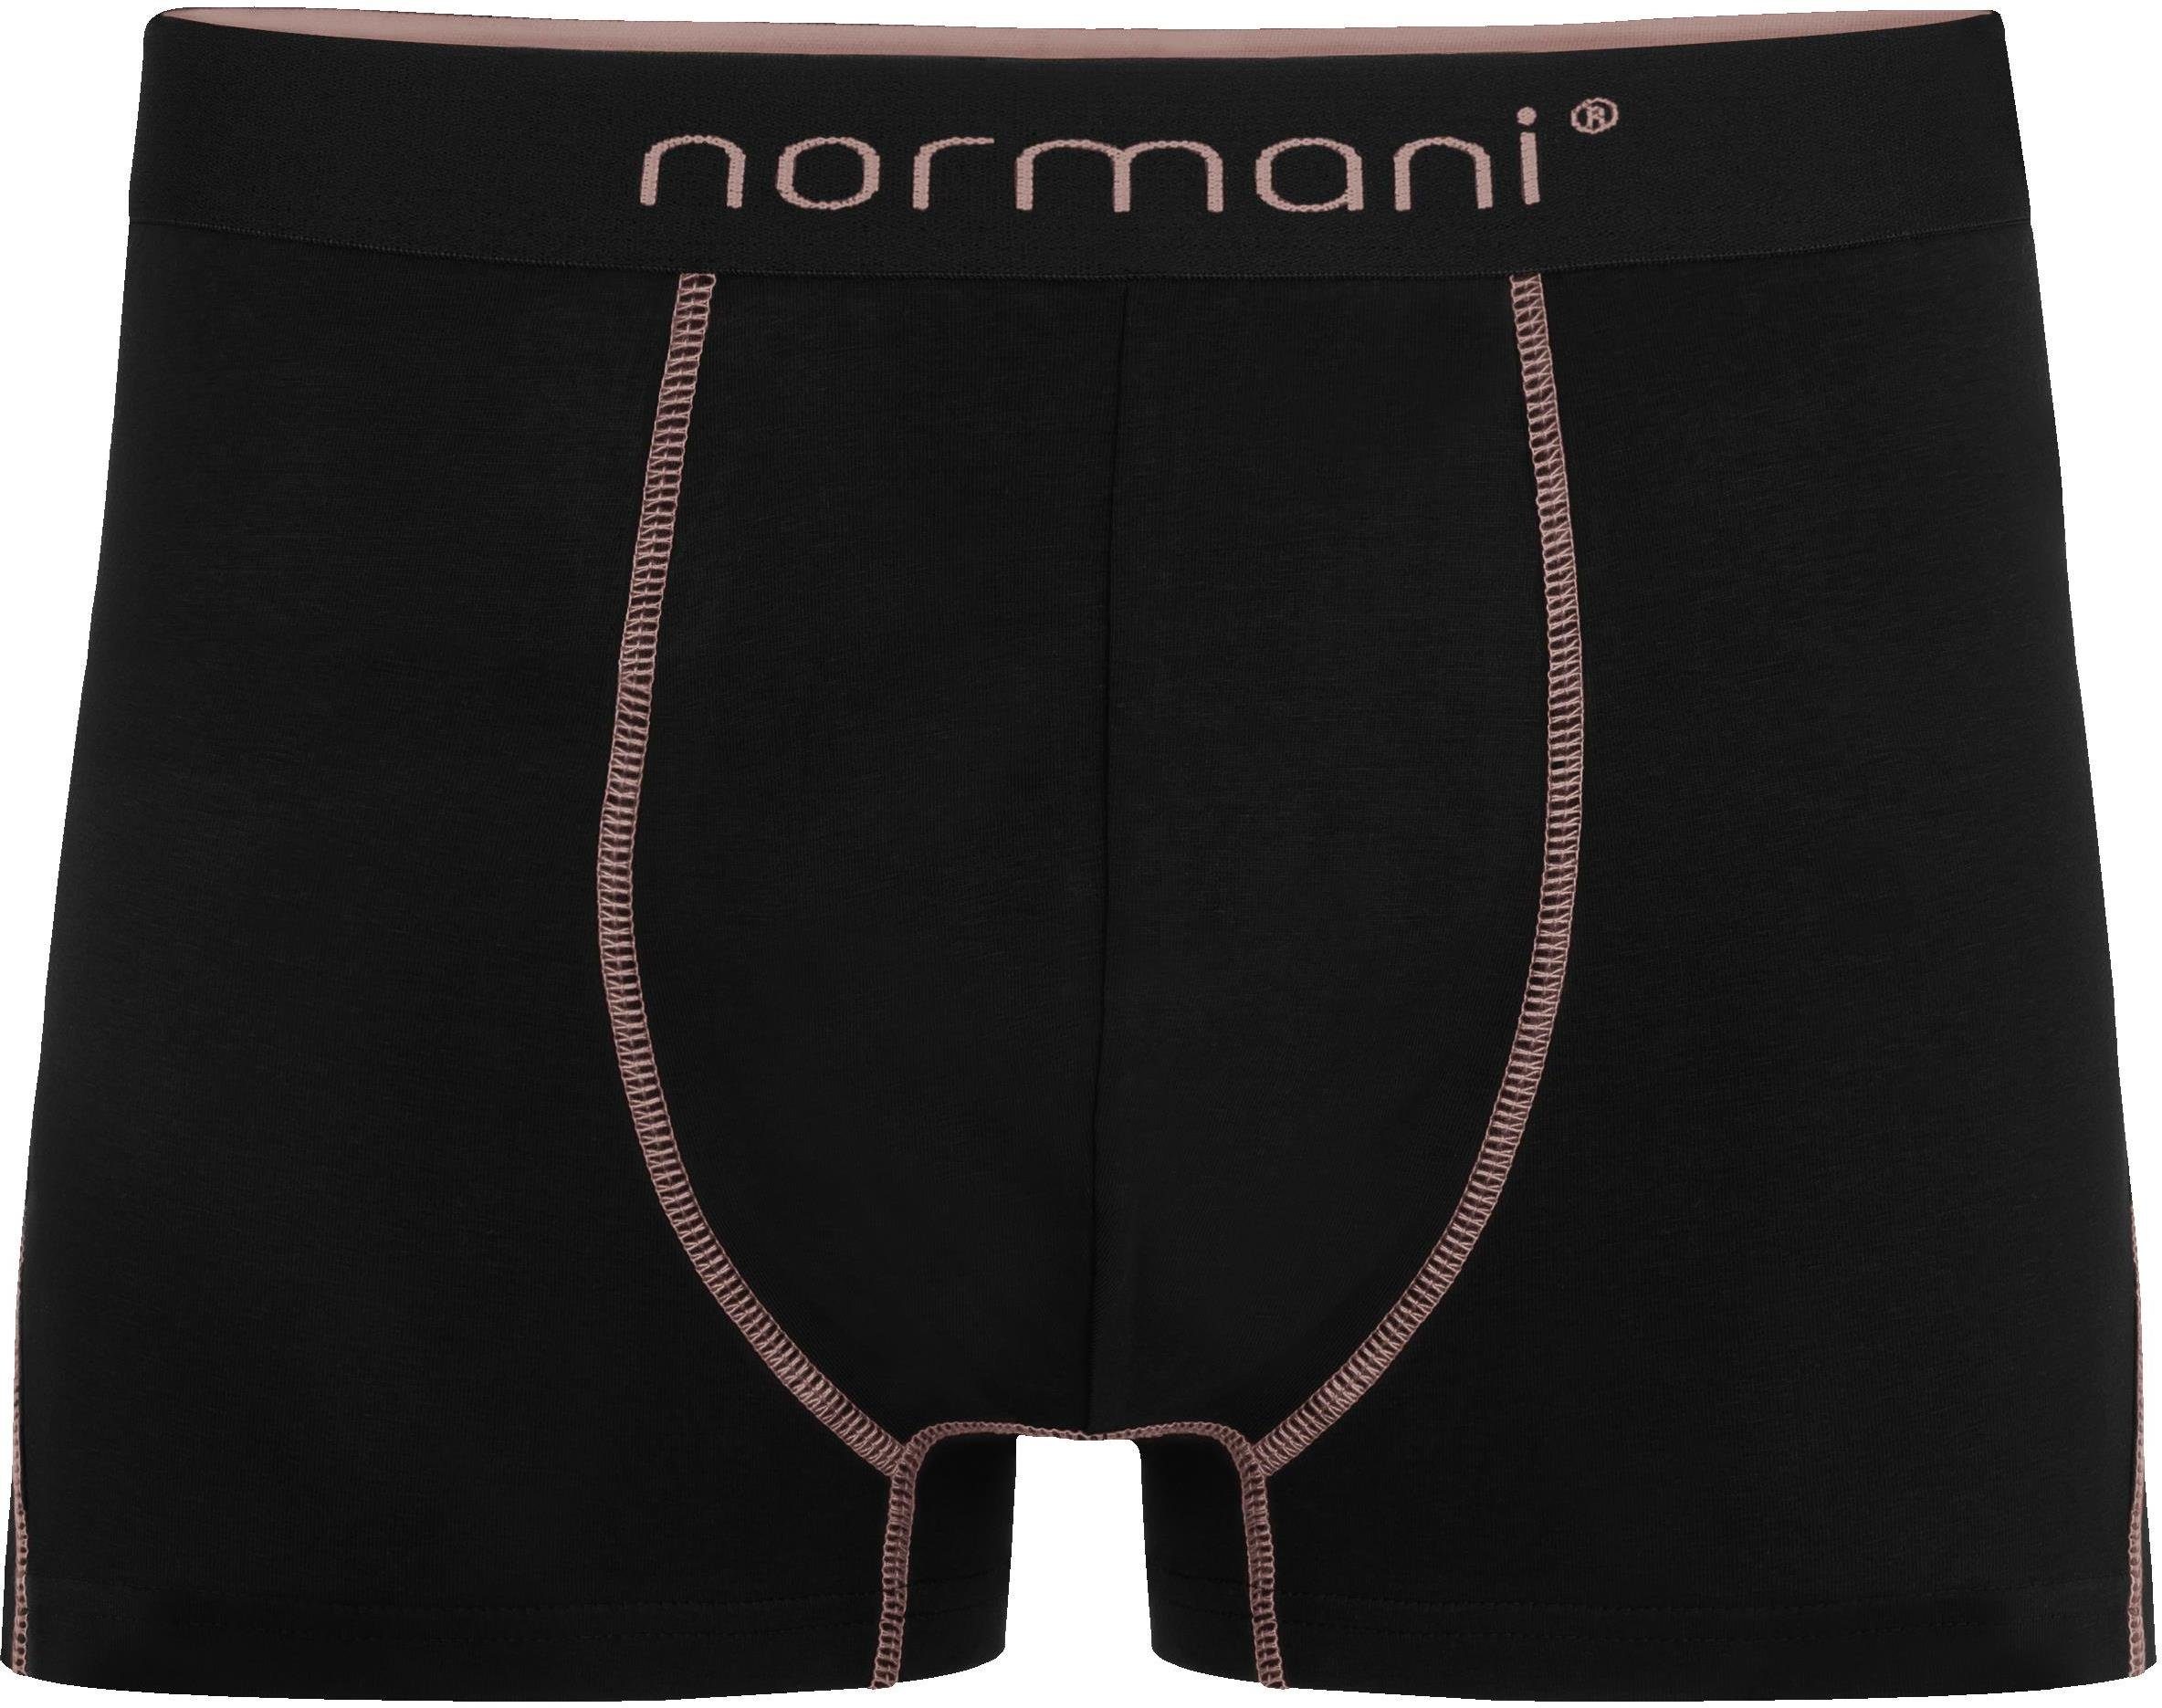 normani Boxershorts für Baumwolle Herren Männer x Baumwoll-Boxershorts atmungsaktiver 12 Lachs/Rot/Schwarz Unterhose aus